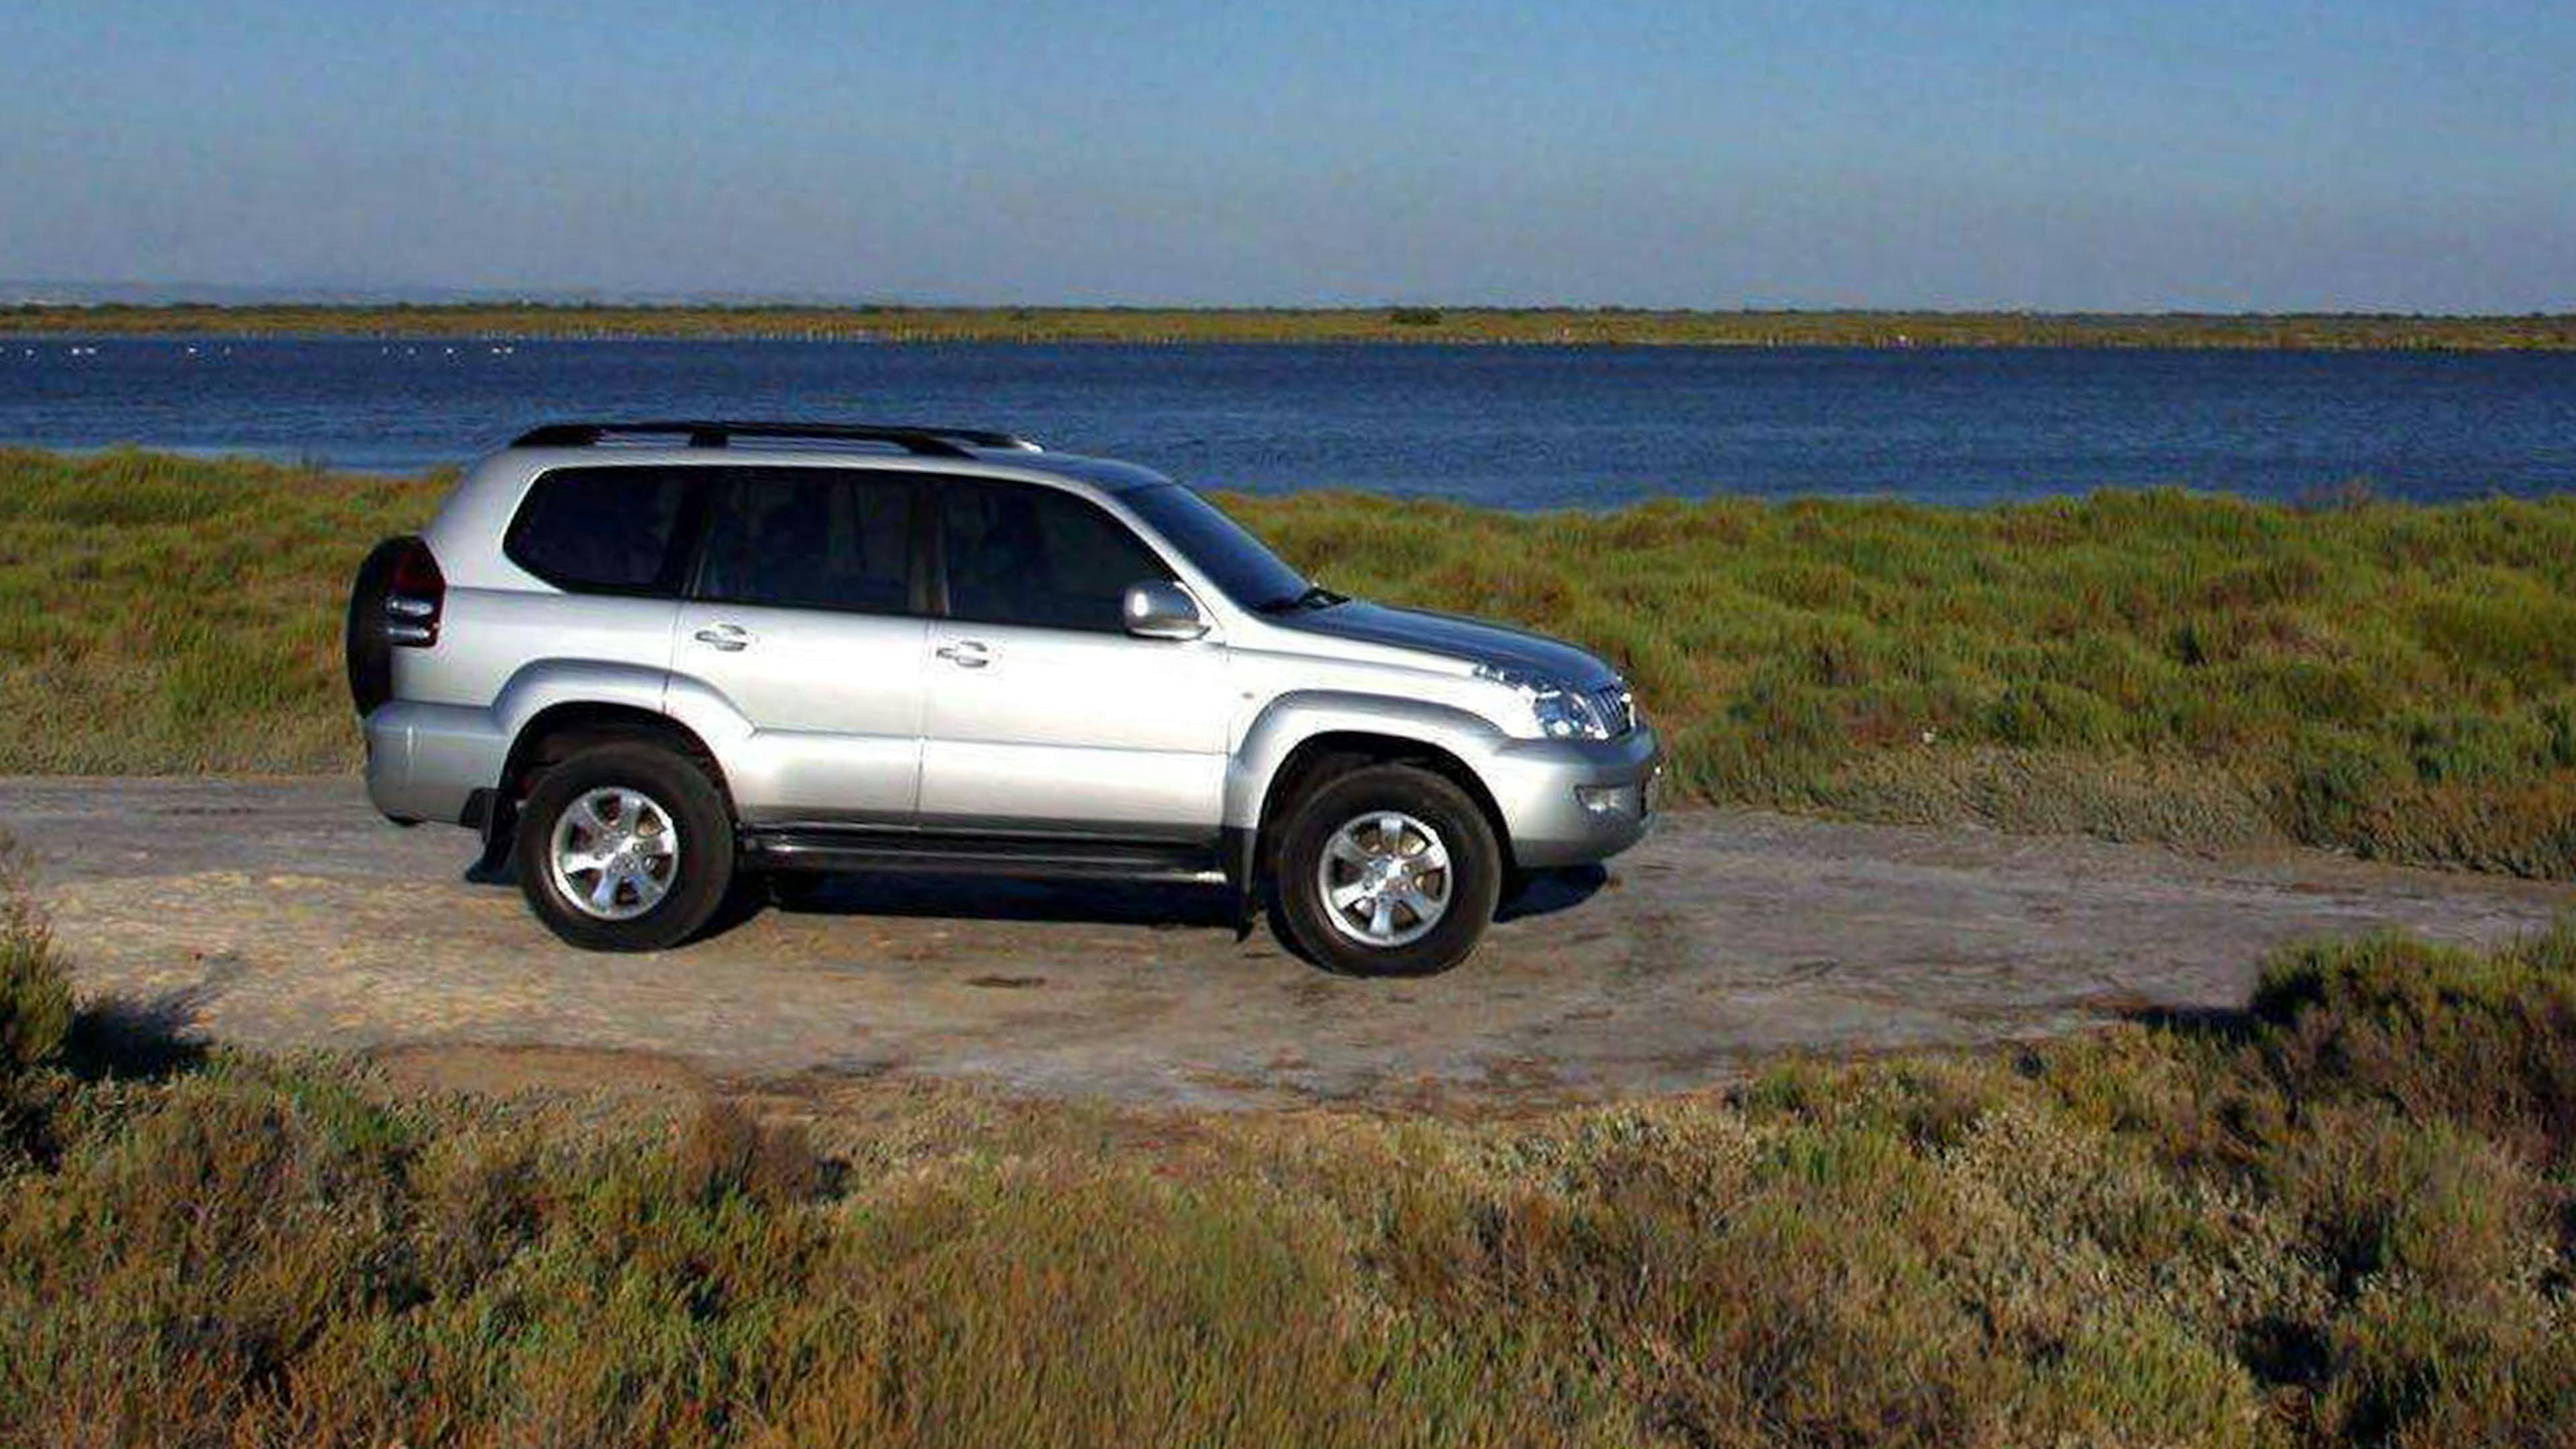 Ein silberner Toyota Land Cruiser Geländewagen steht auf einer Anhöhe vor einem Gewässer.